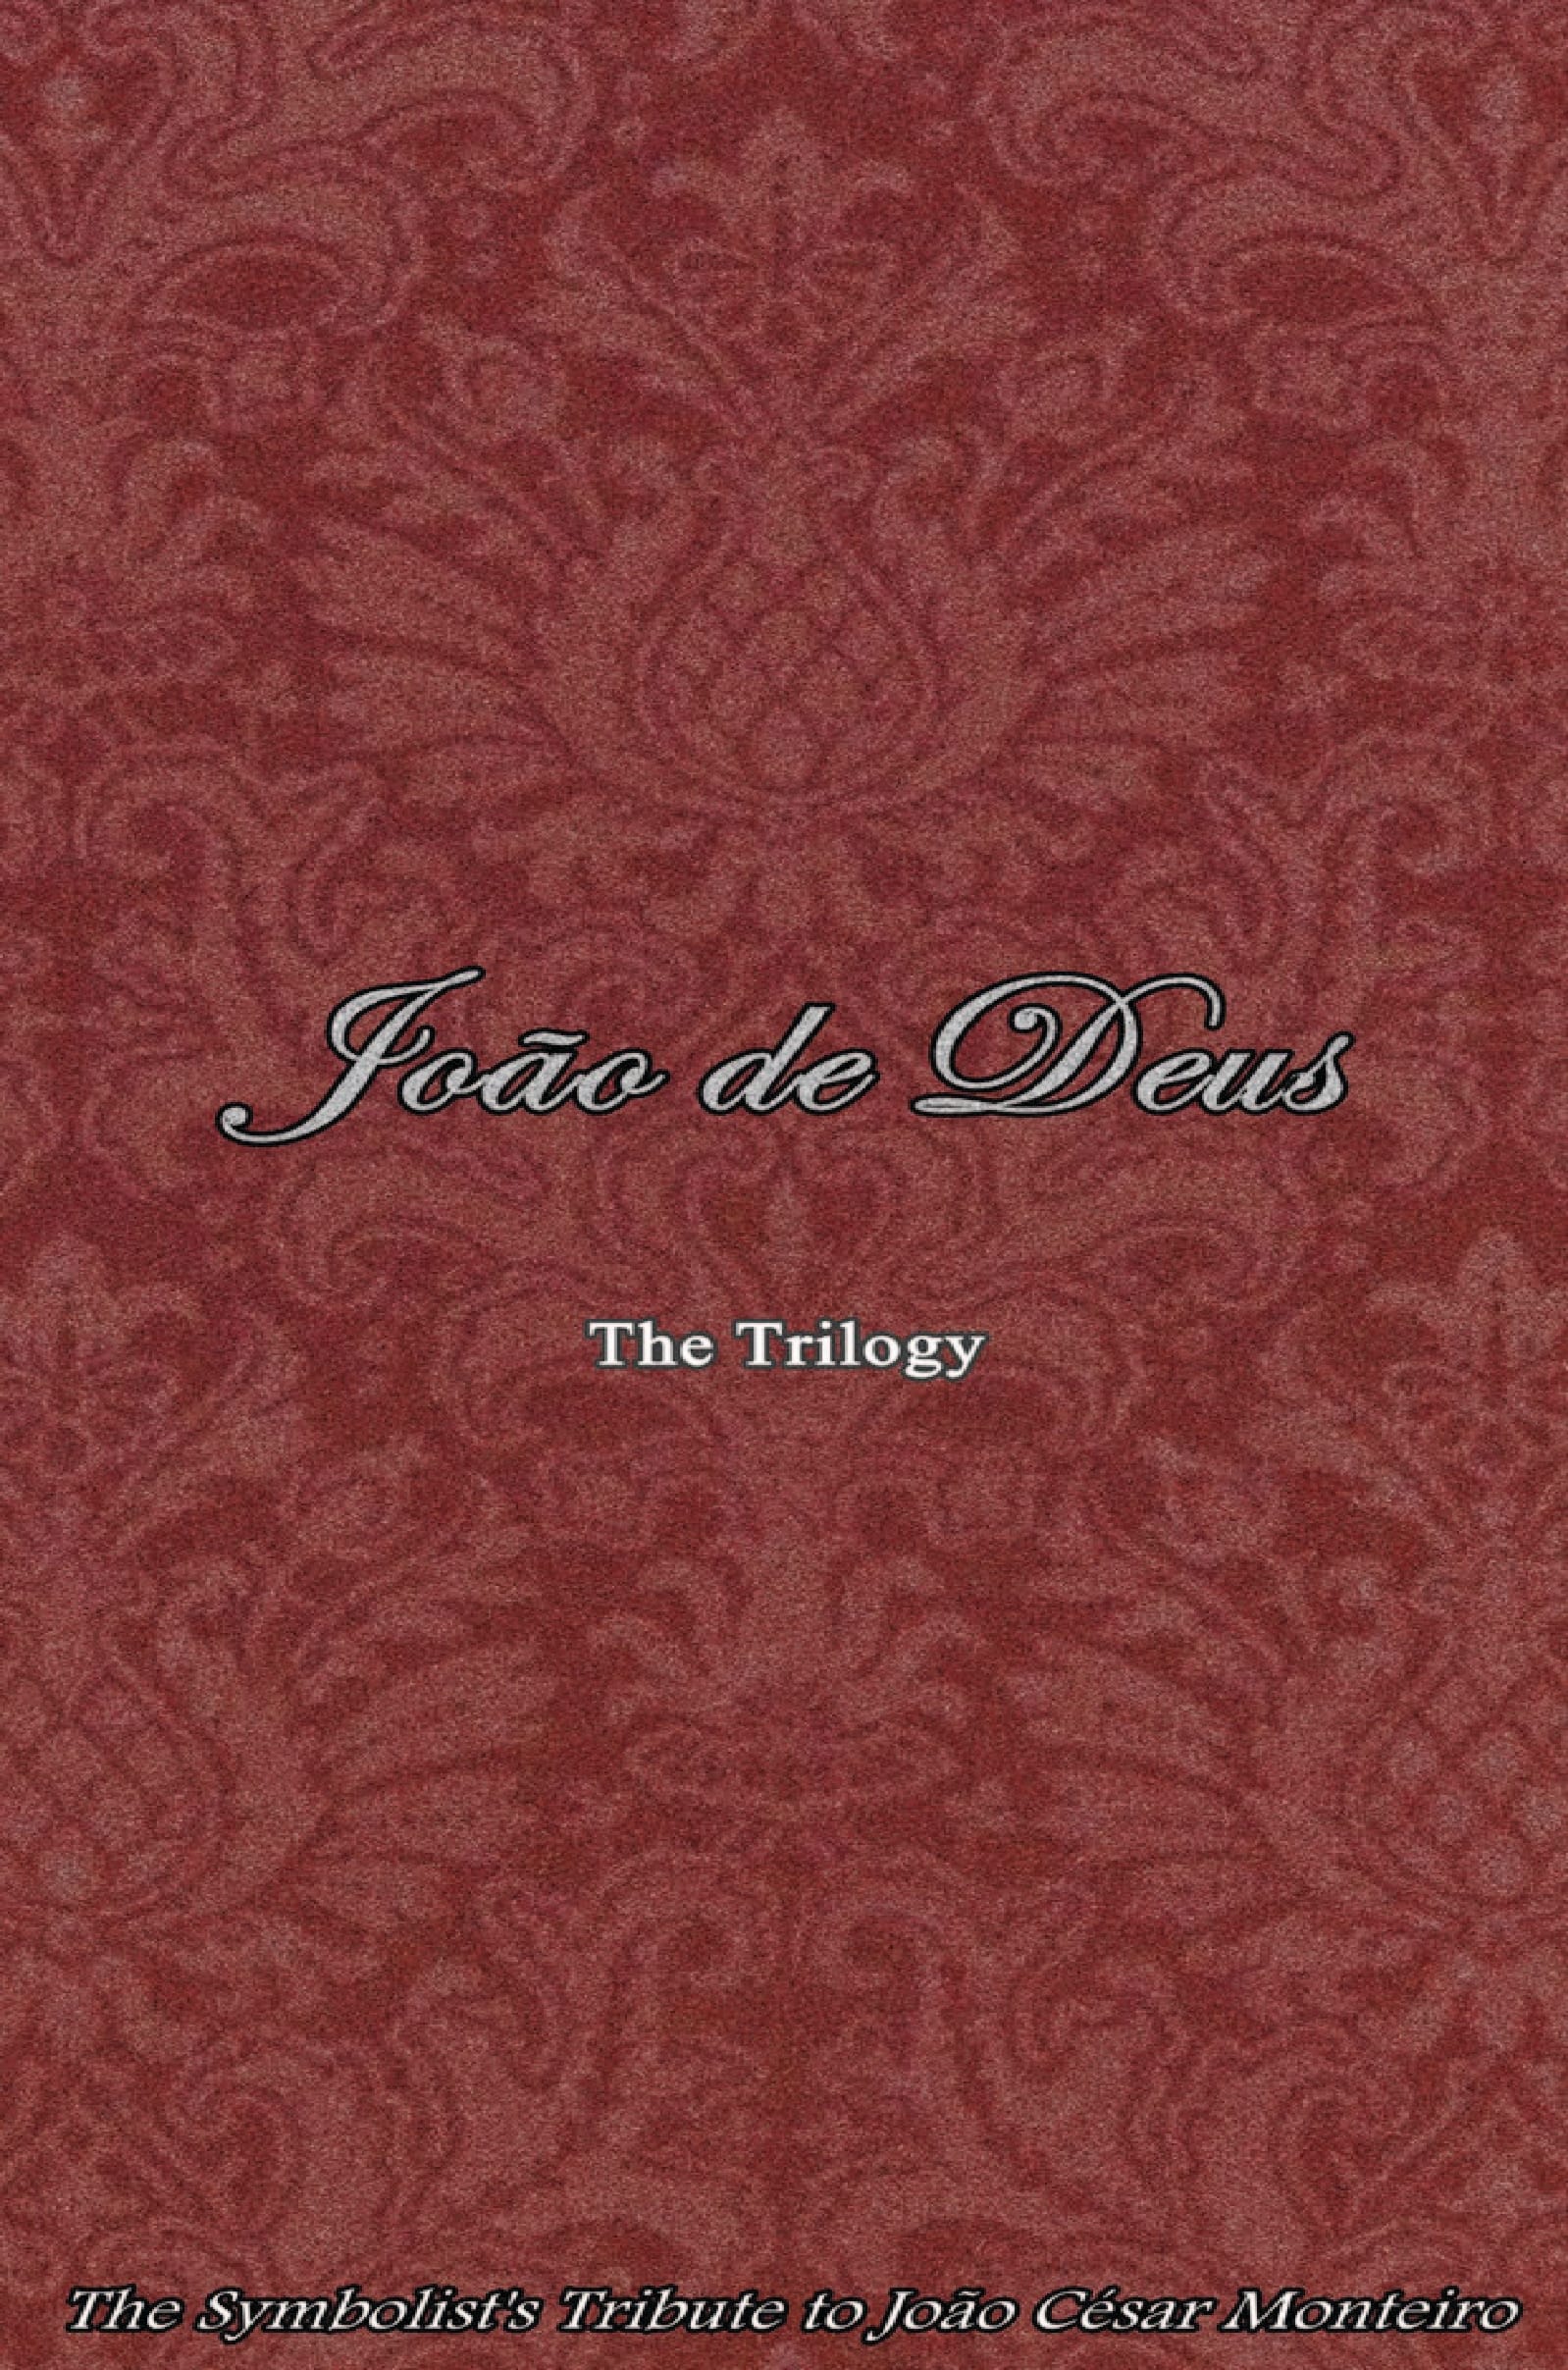 João de Deus Trilogy